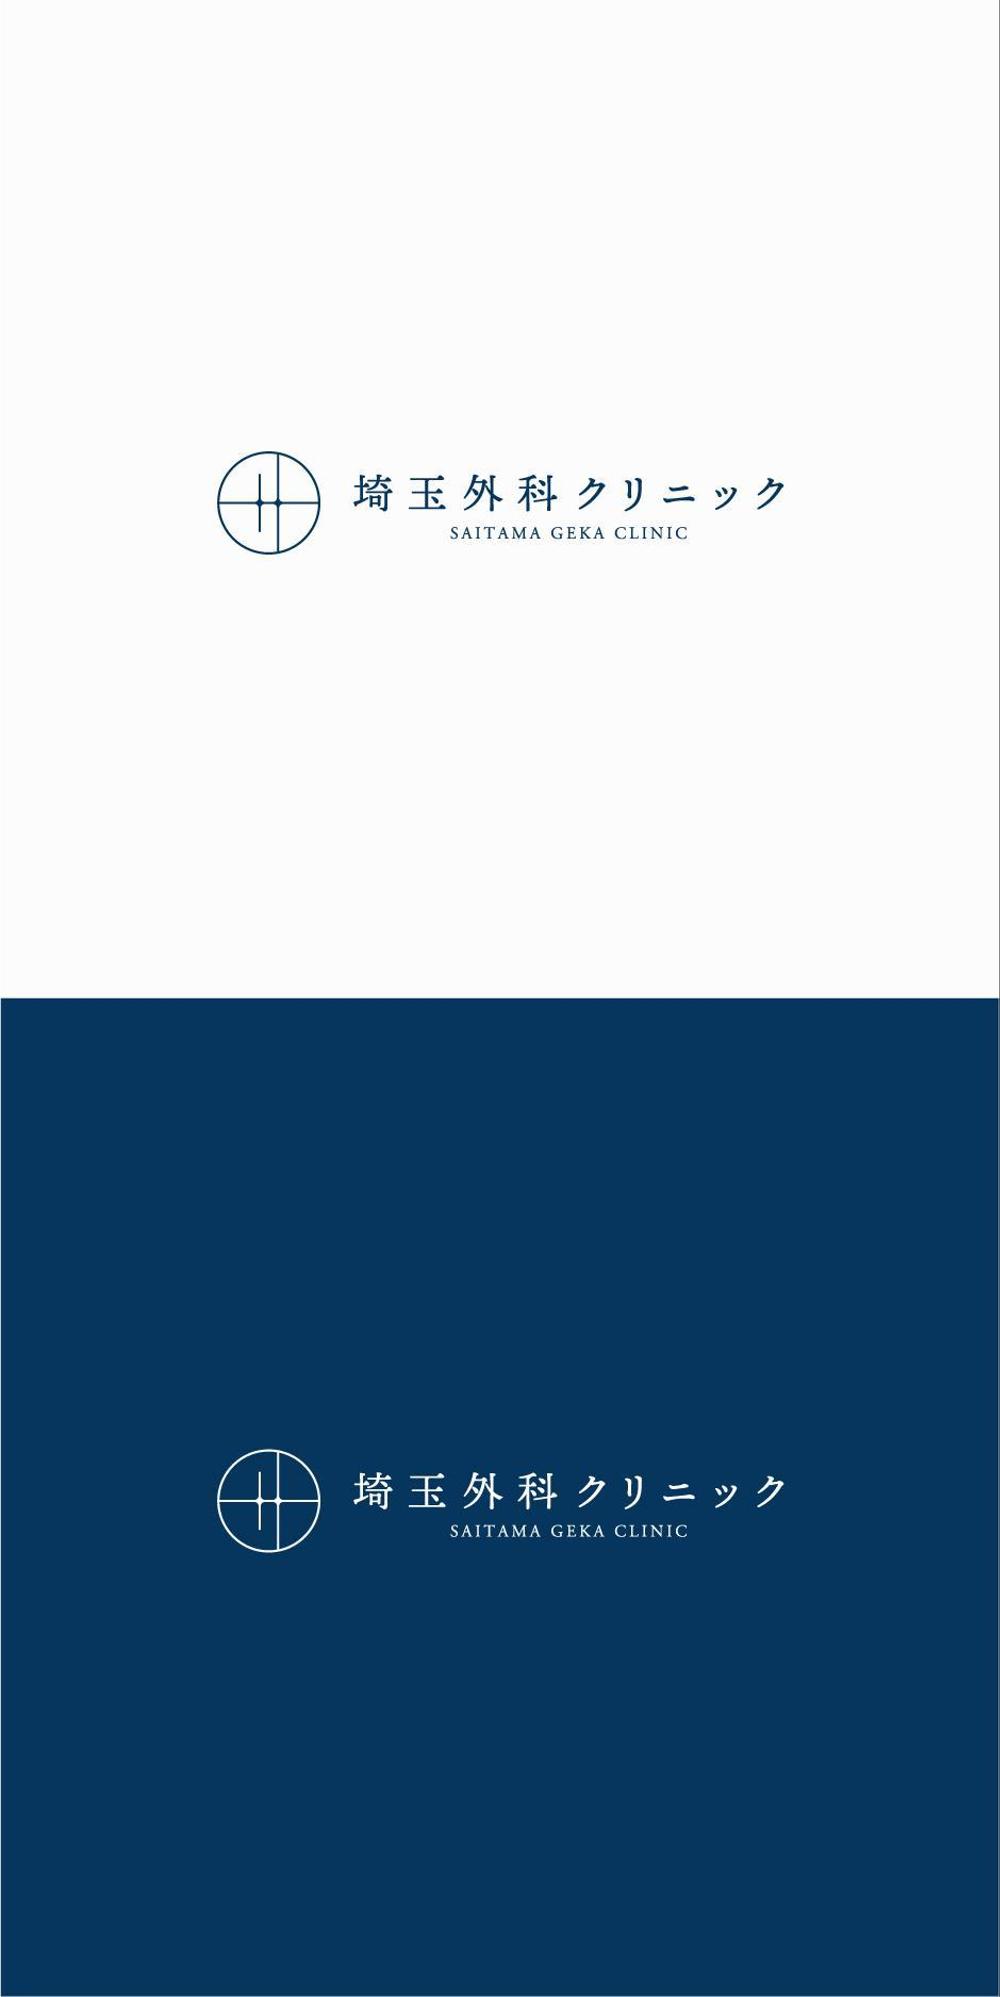 日帰り腹腔鏡手術クリニック「埼玉外科クリニック」のロゴ